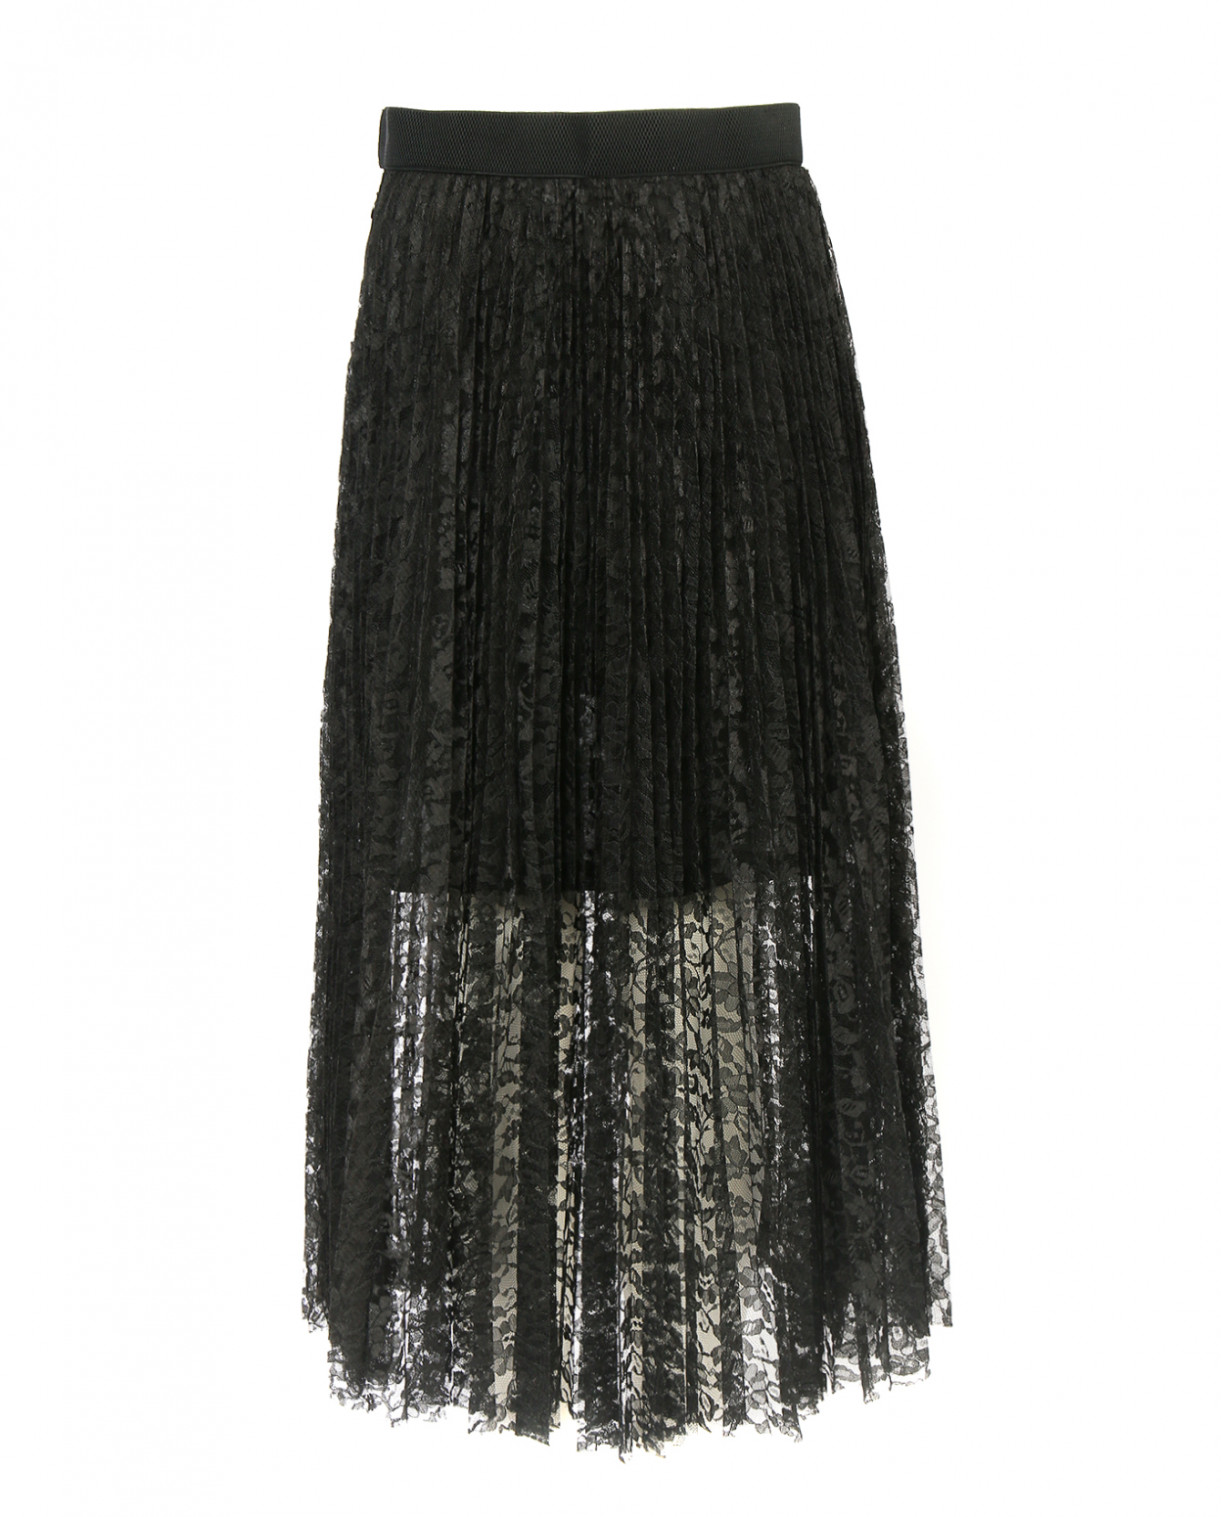 Плиссированная юбка из кружева Mo&Co  –  Общий вид  – Цвет:  Черный